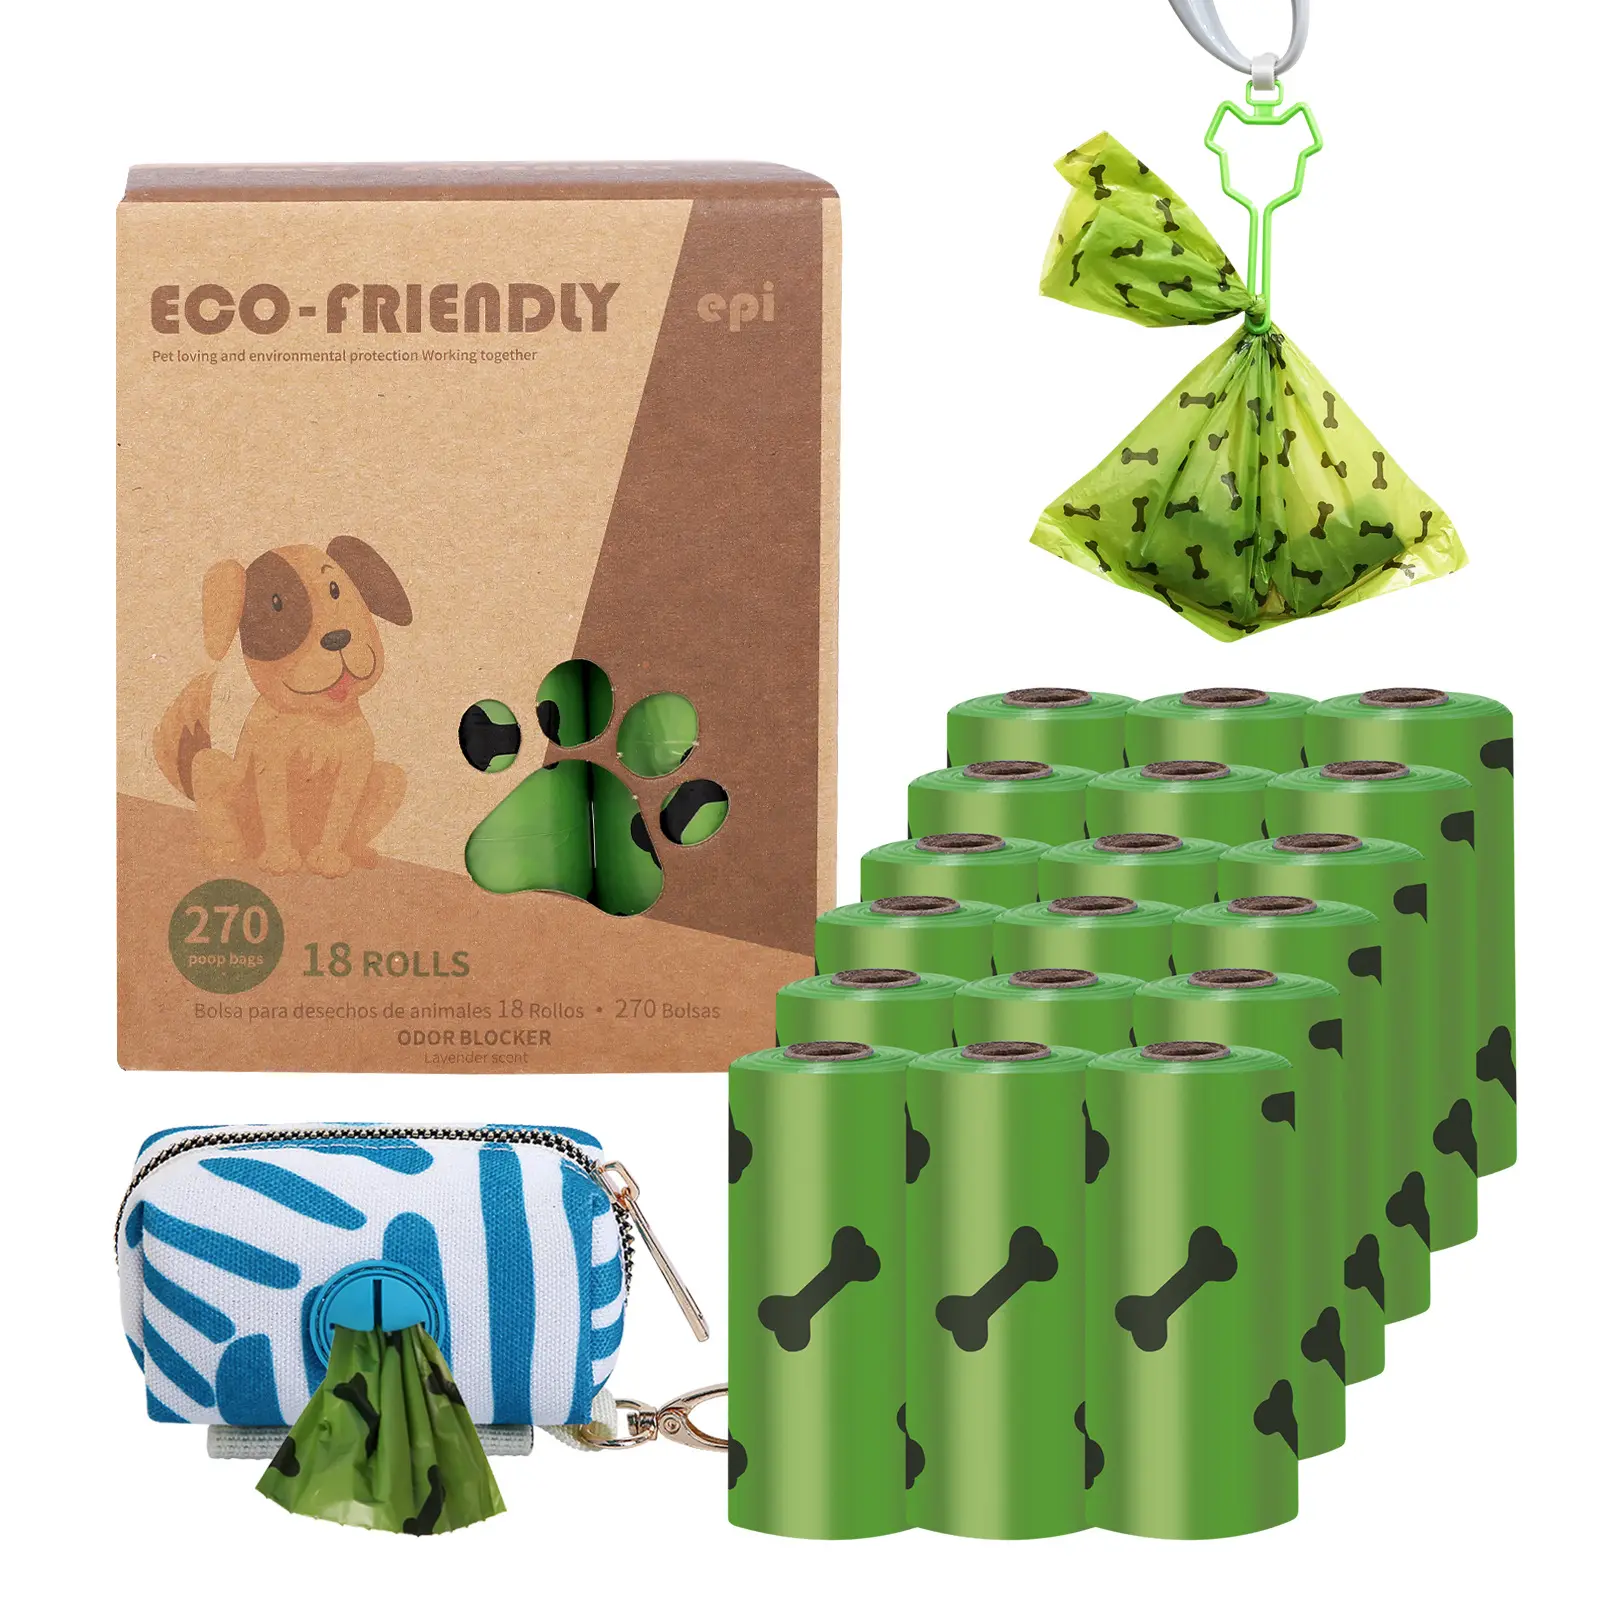 Benutzer definierte niedrige Verkaufs preise Umwelt freundliche biologisch abbaubare Hundekot-Tasche 18 Rollen von der Box mit Spender und Clip Dog Poop Bag